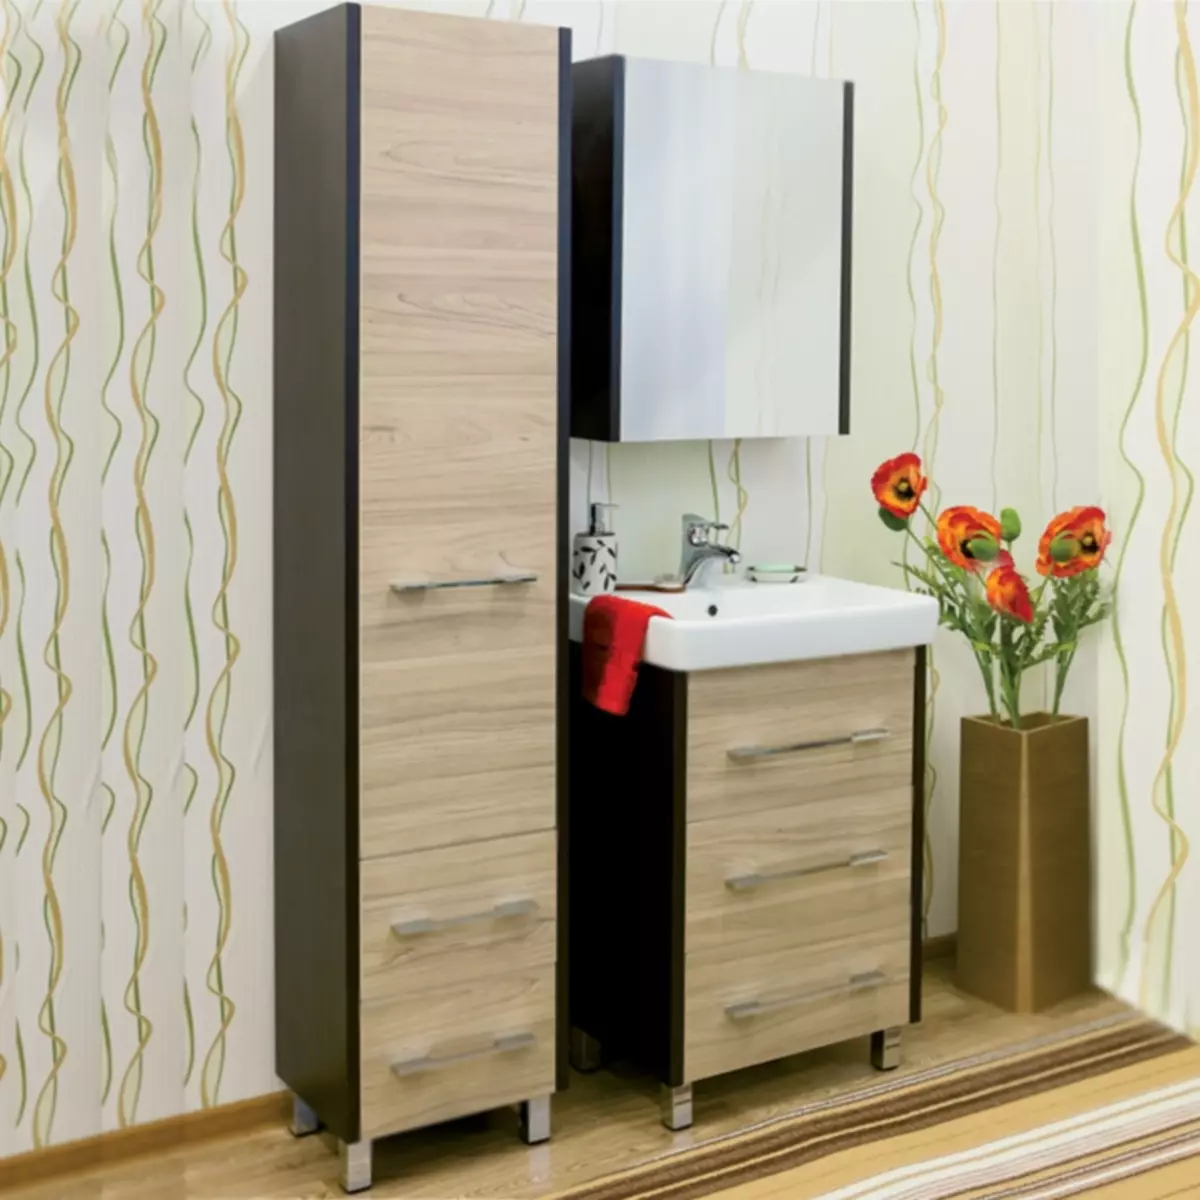 Vloerkaste in die badkamer (67 foto's): Groot laaikas en klein lockers, meubelresensie van Ikea 10412_25